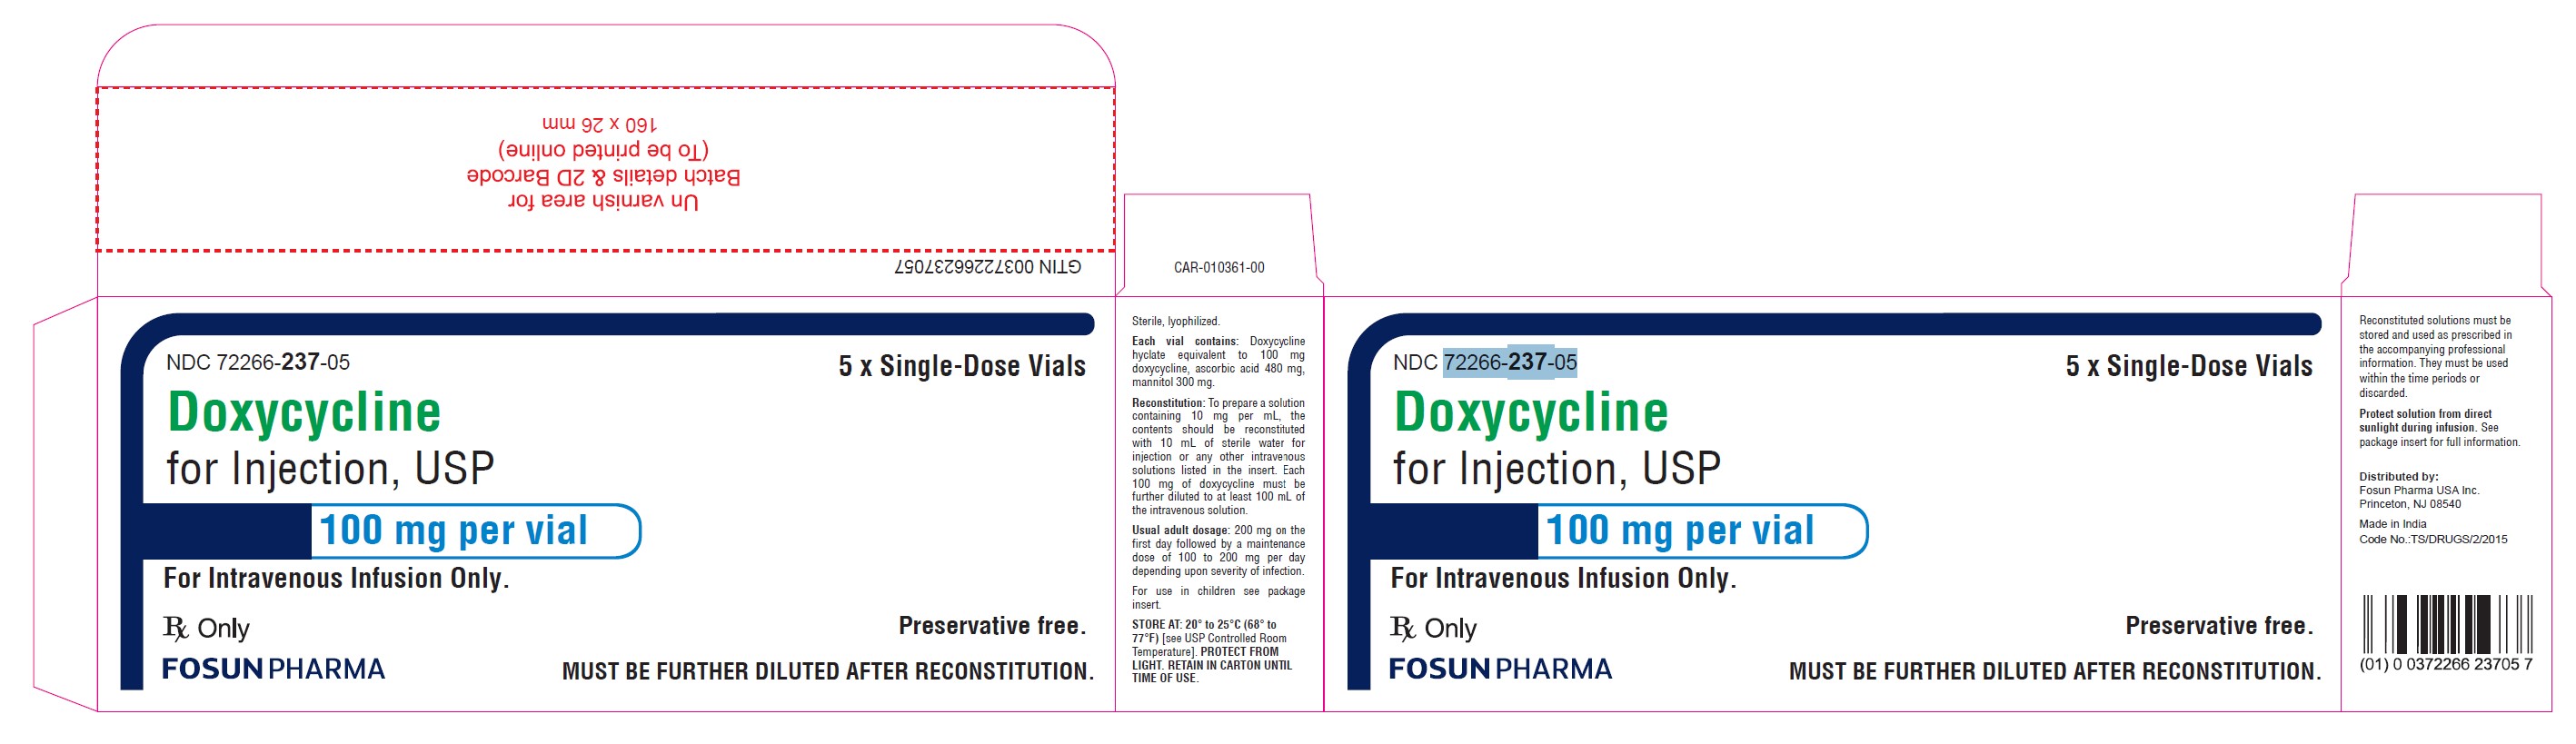 Doxycycline Carton Label